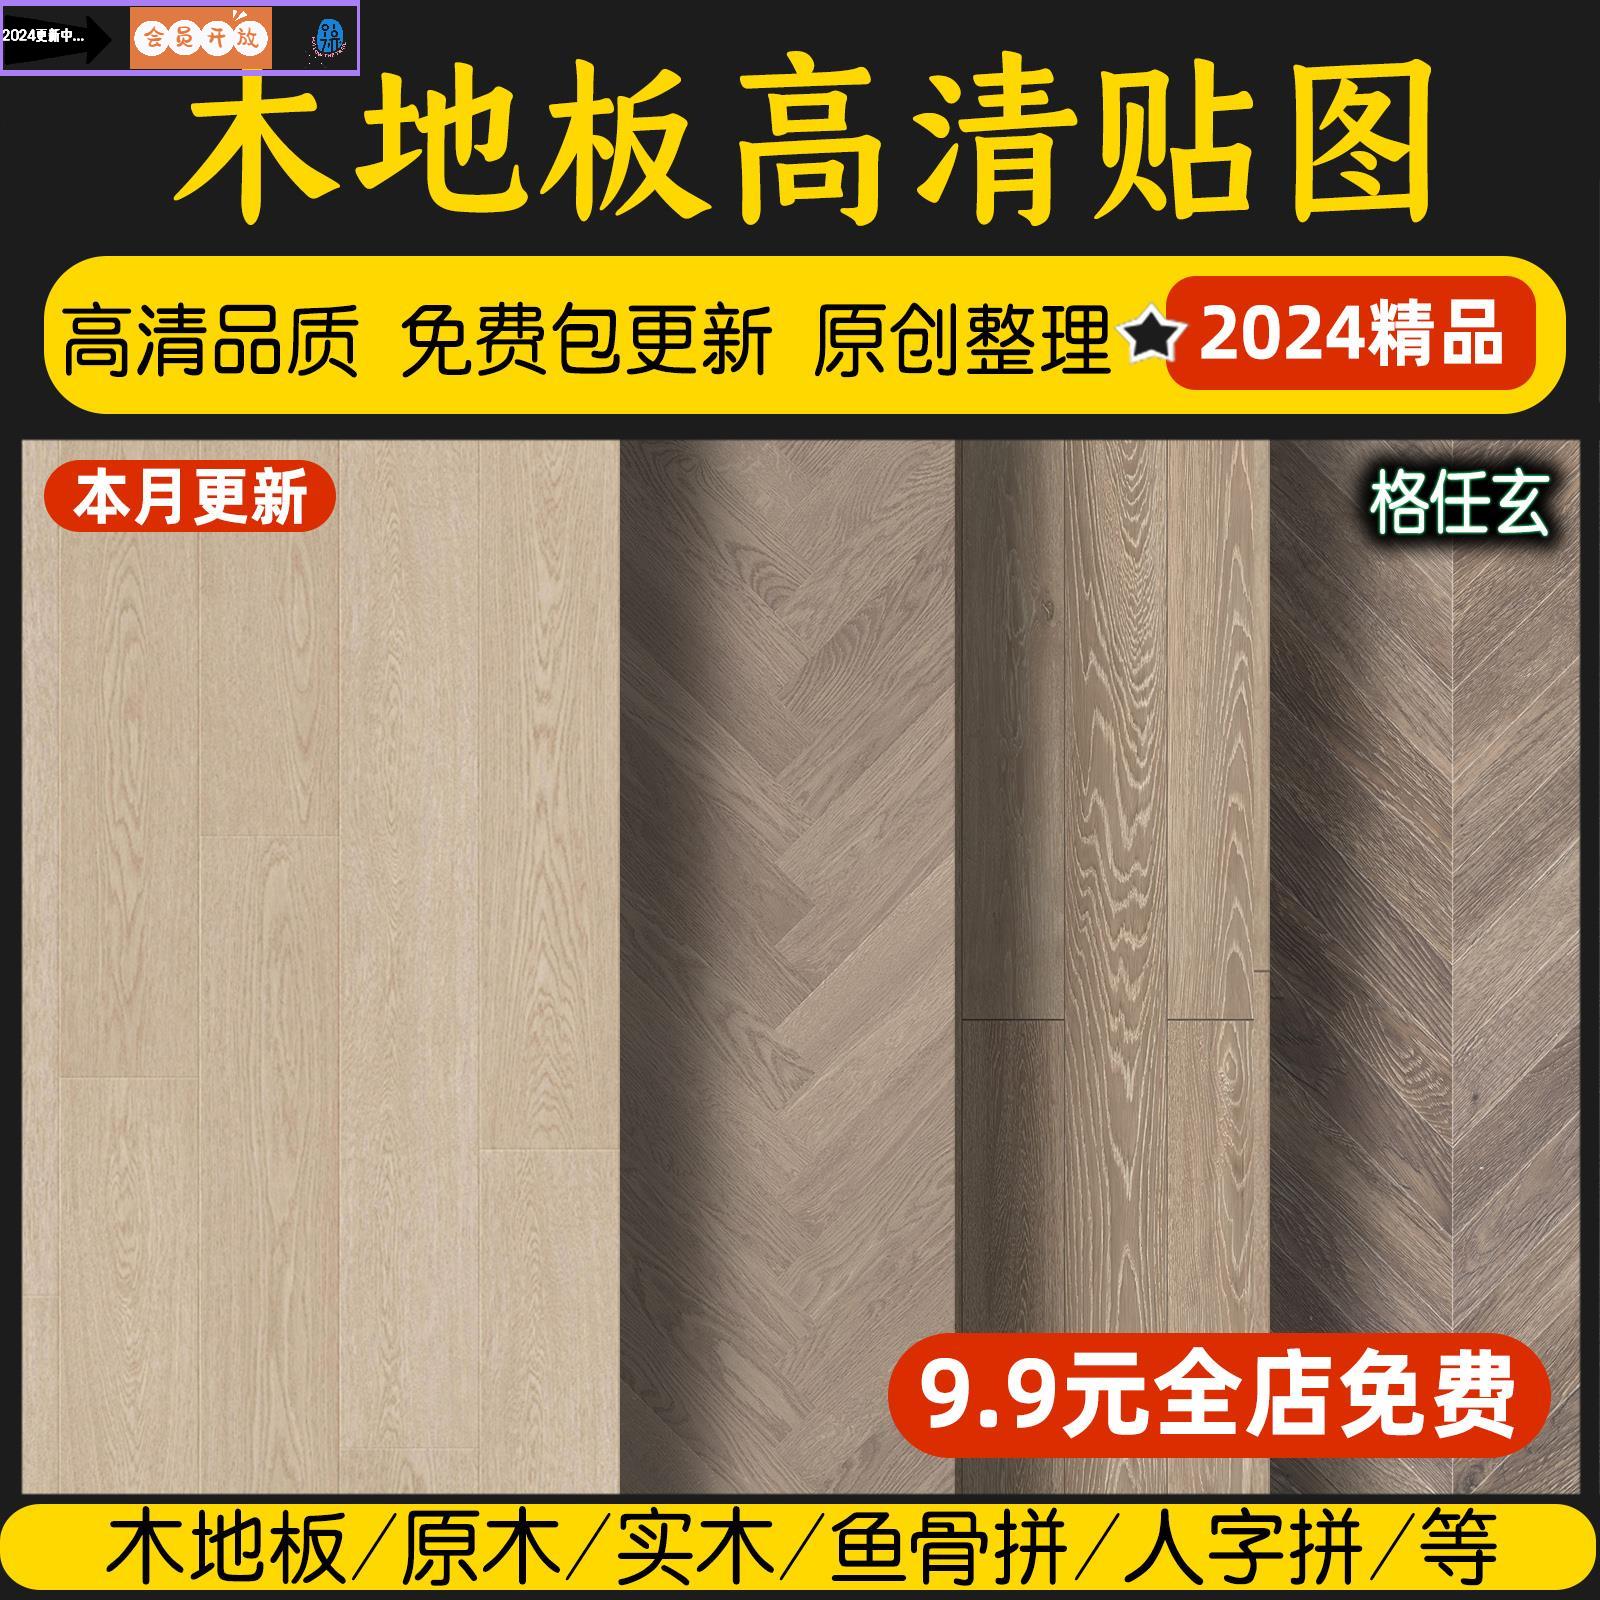 2024木地板贴图原木肌理纹理高清木质实木木纹背景材质设计素材库